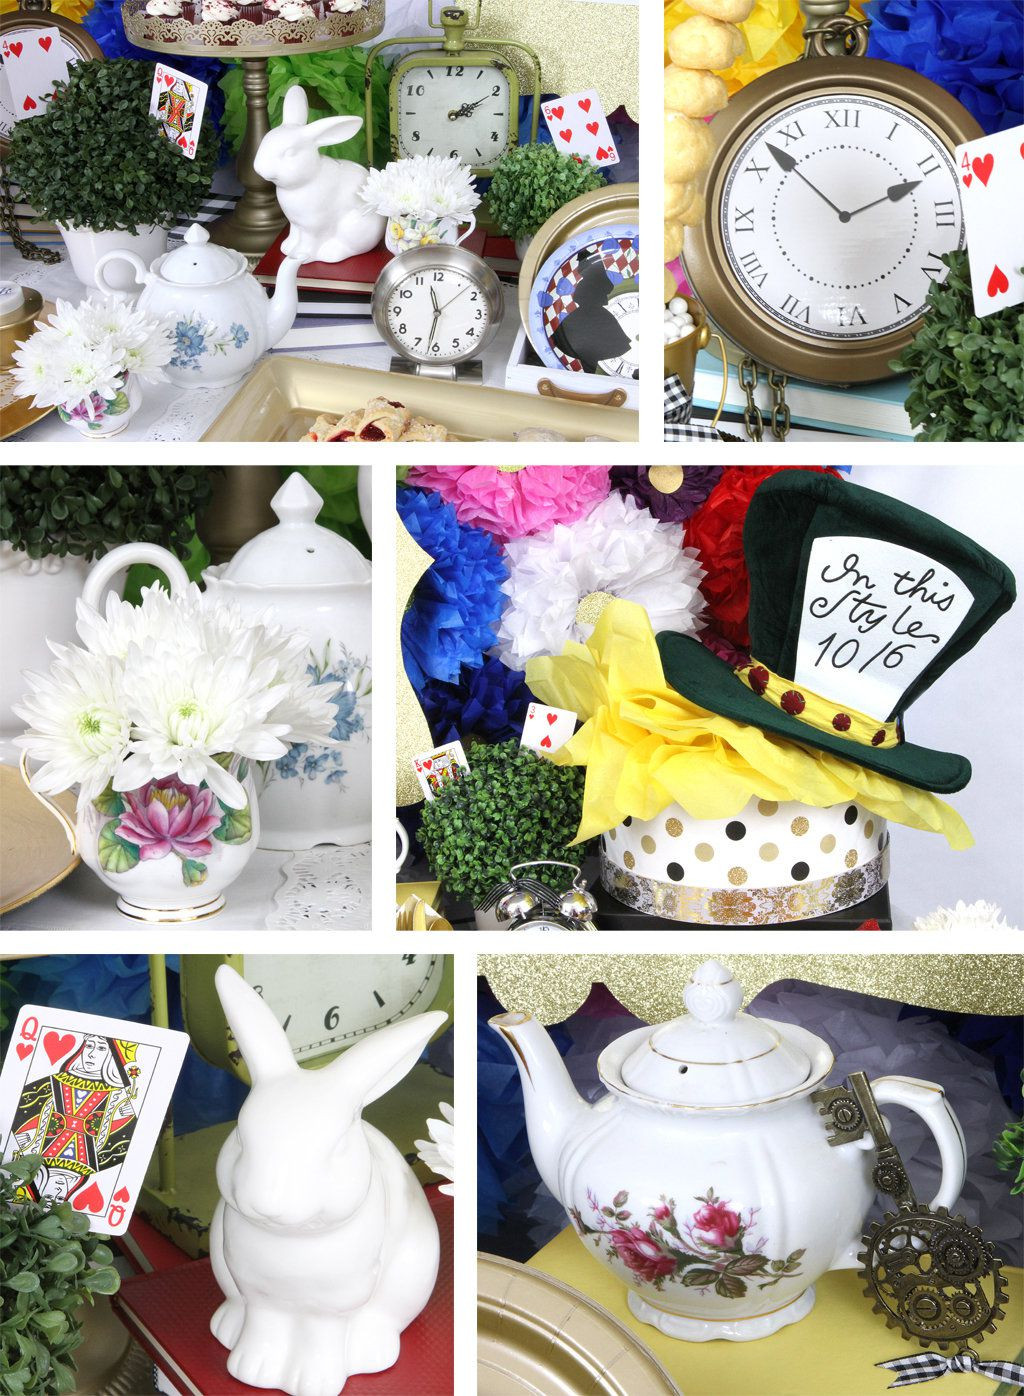 Best ideas about Alice In Wonderland Birthday Decorations
. Save or Pin Alice In Wonderland Party Ideas Now.